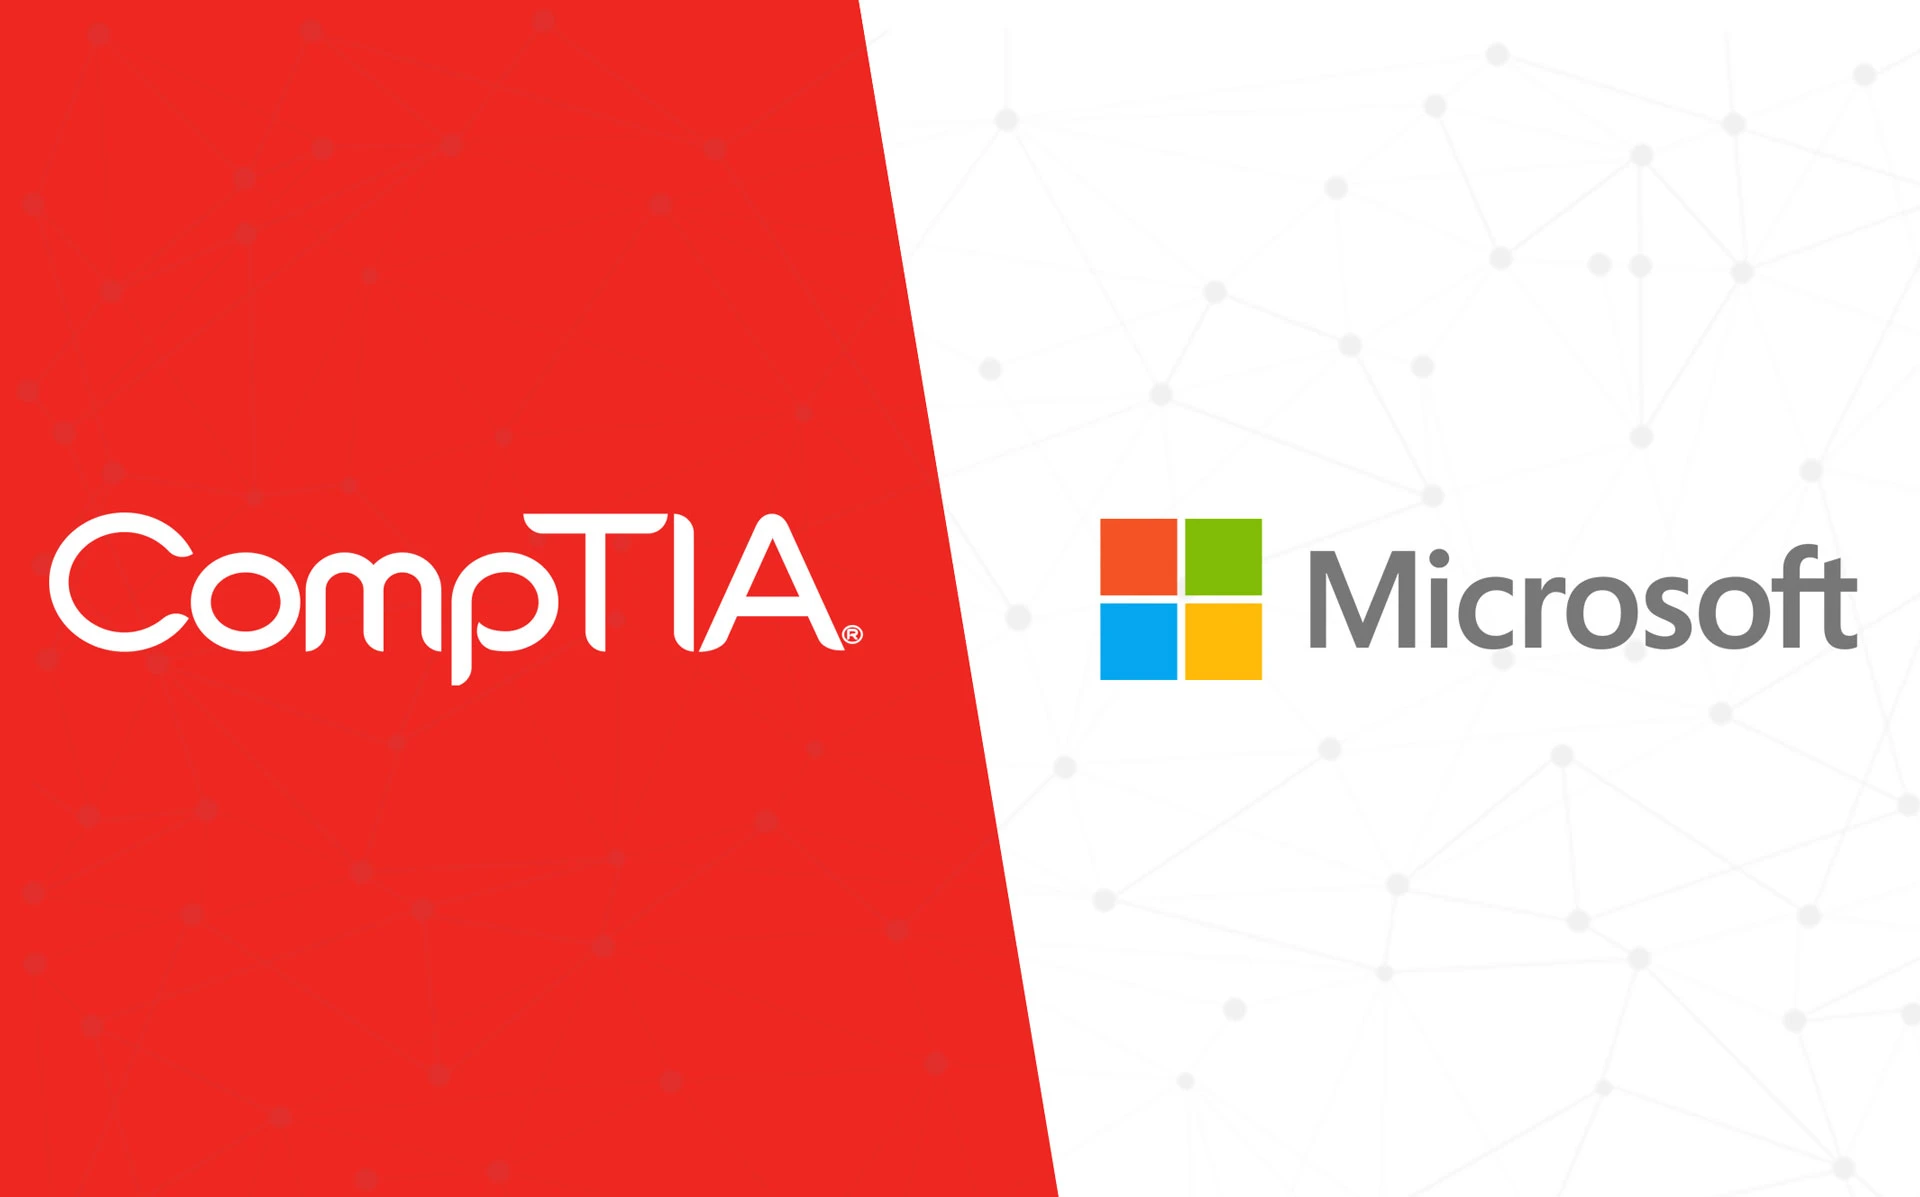 2021-ci ildə CompTIA və Microsoft üzrə beynəlxalq sertifikasiya təlimlərinə 100-dən çox tələbə qoşulub.